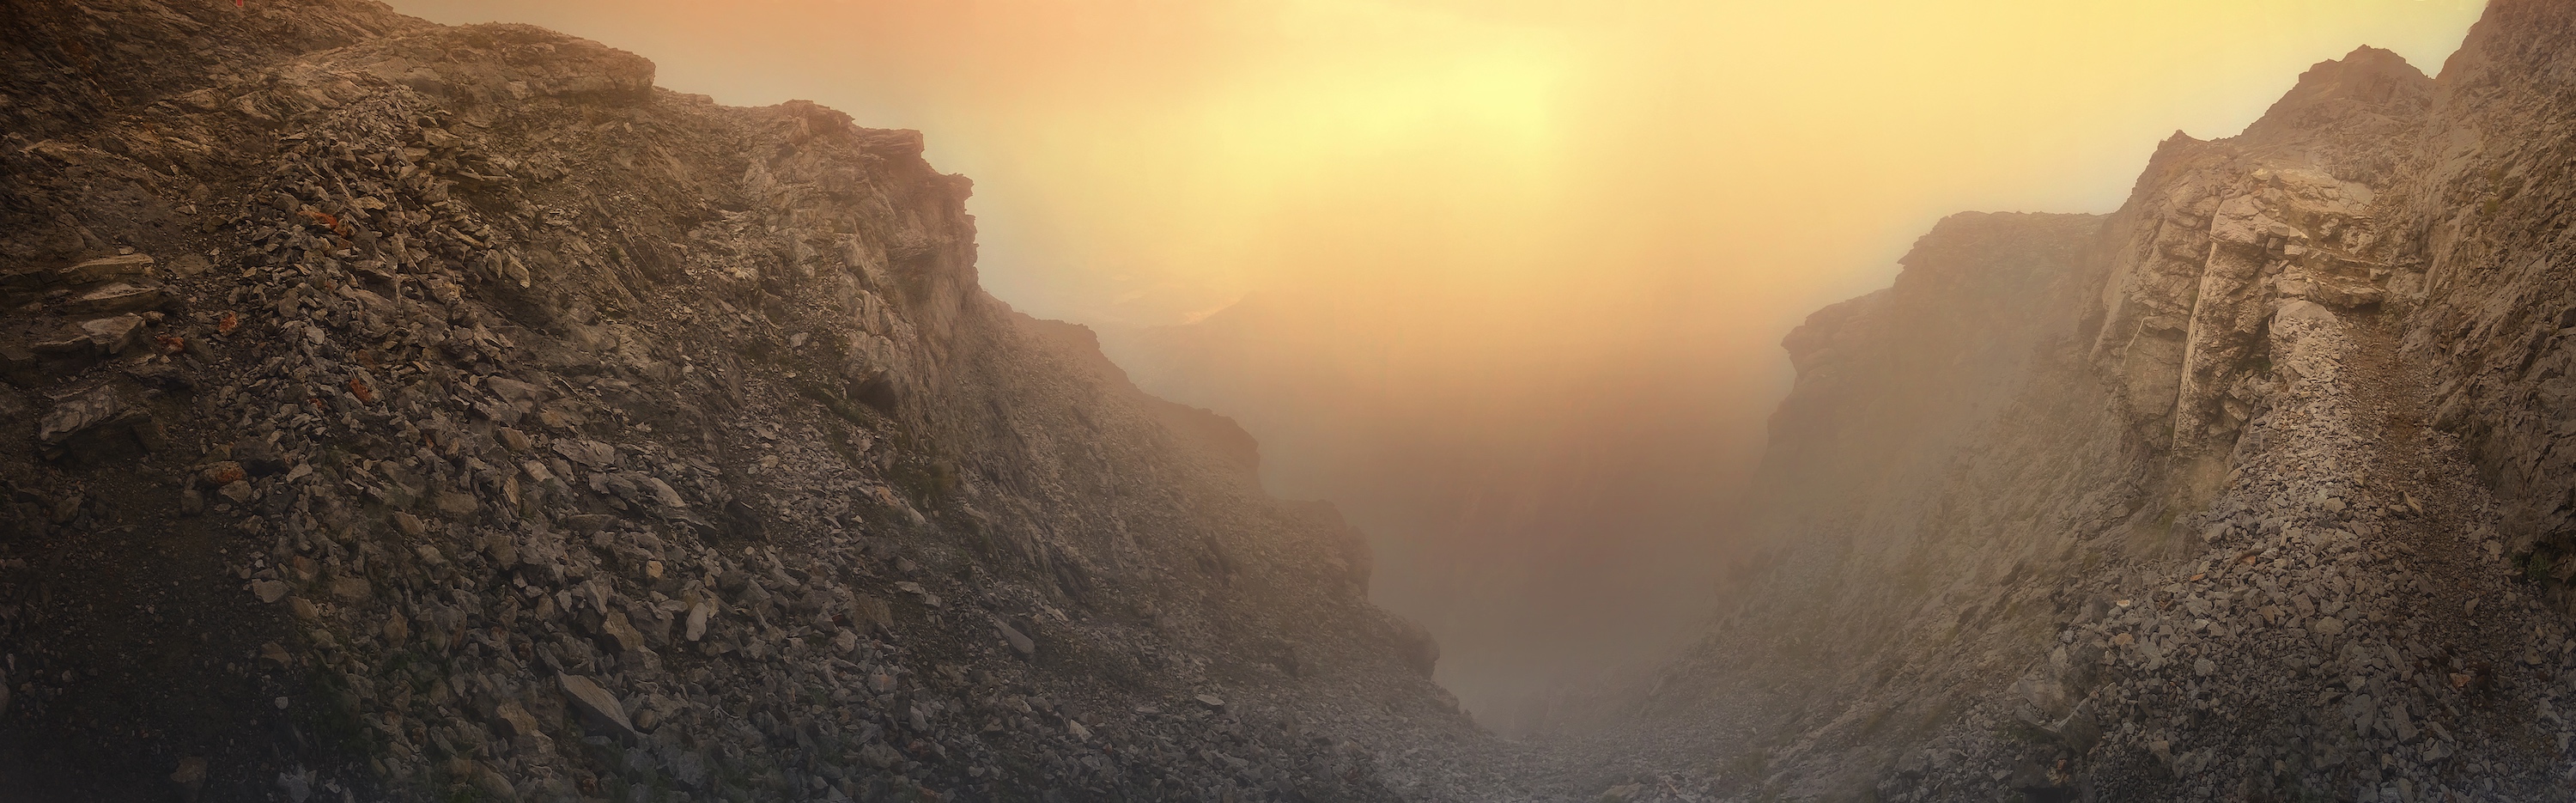 Paysage sur le mont Olympe en Grèce qui rappelle un peu celui de Mars. © Paschalis Bartzoudis, Adobe Stock